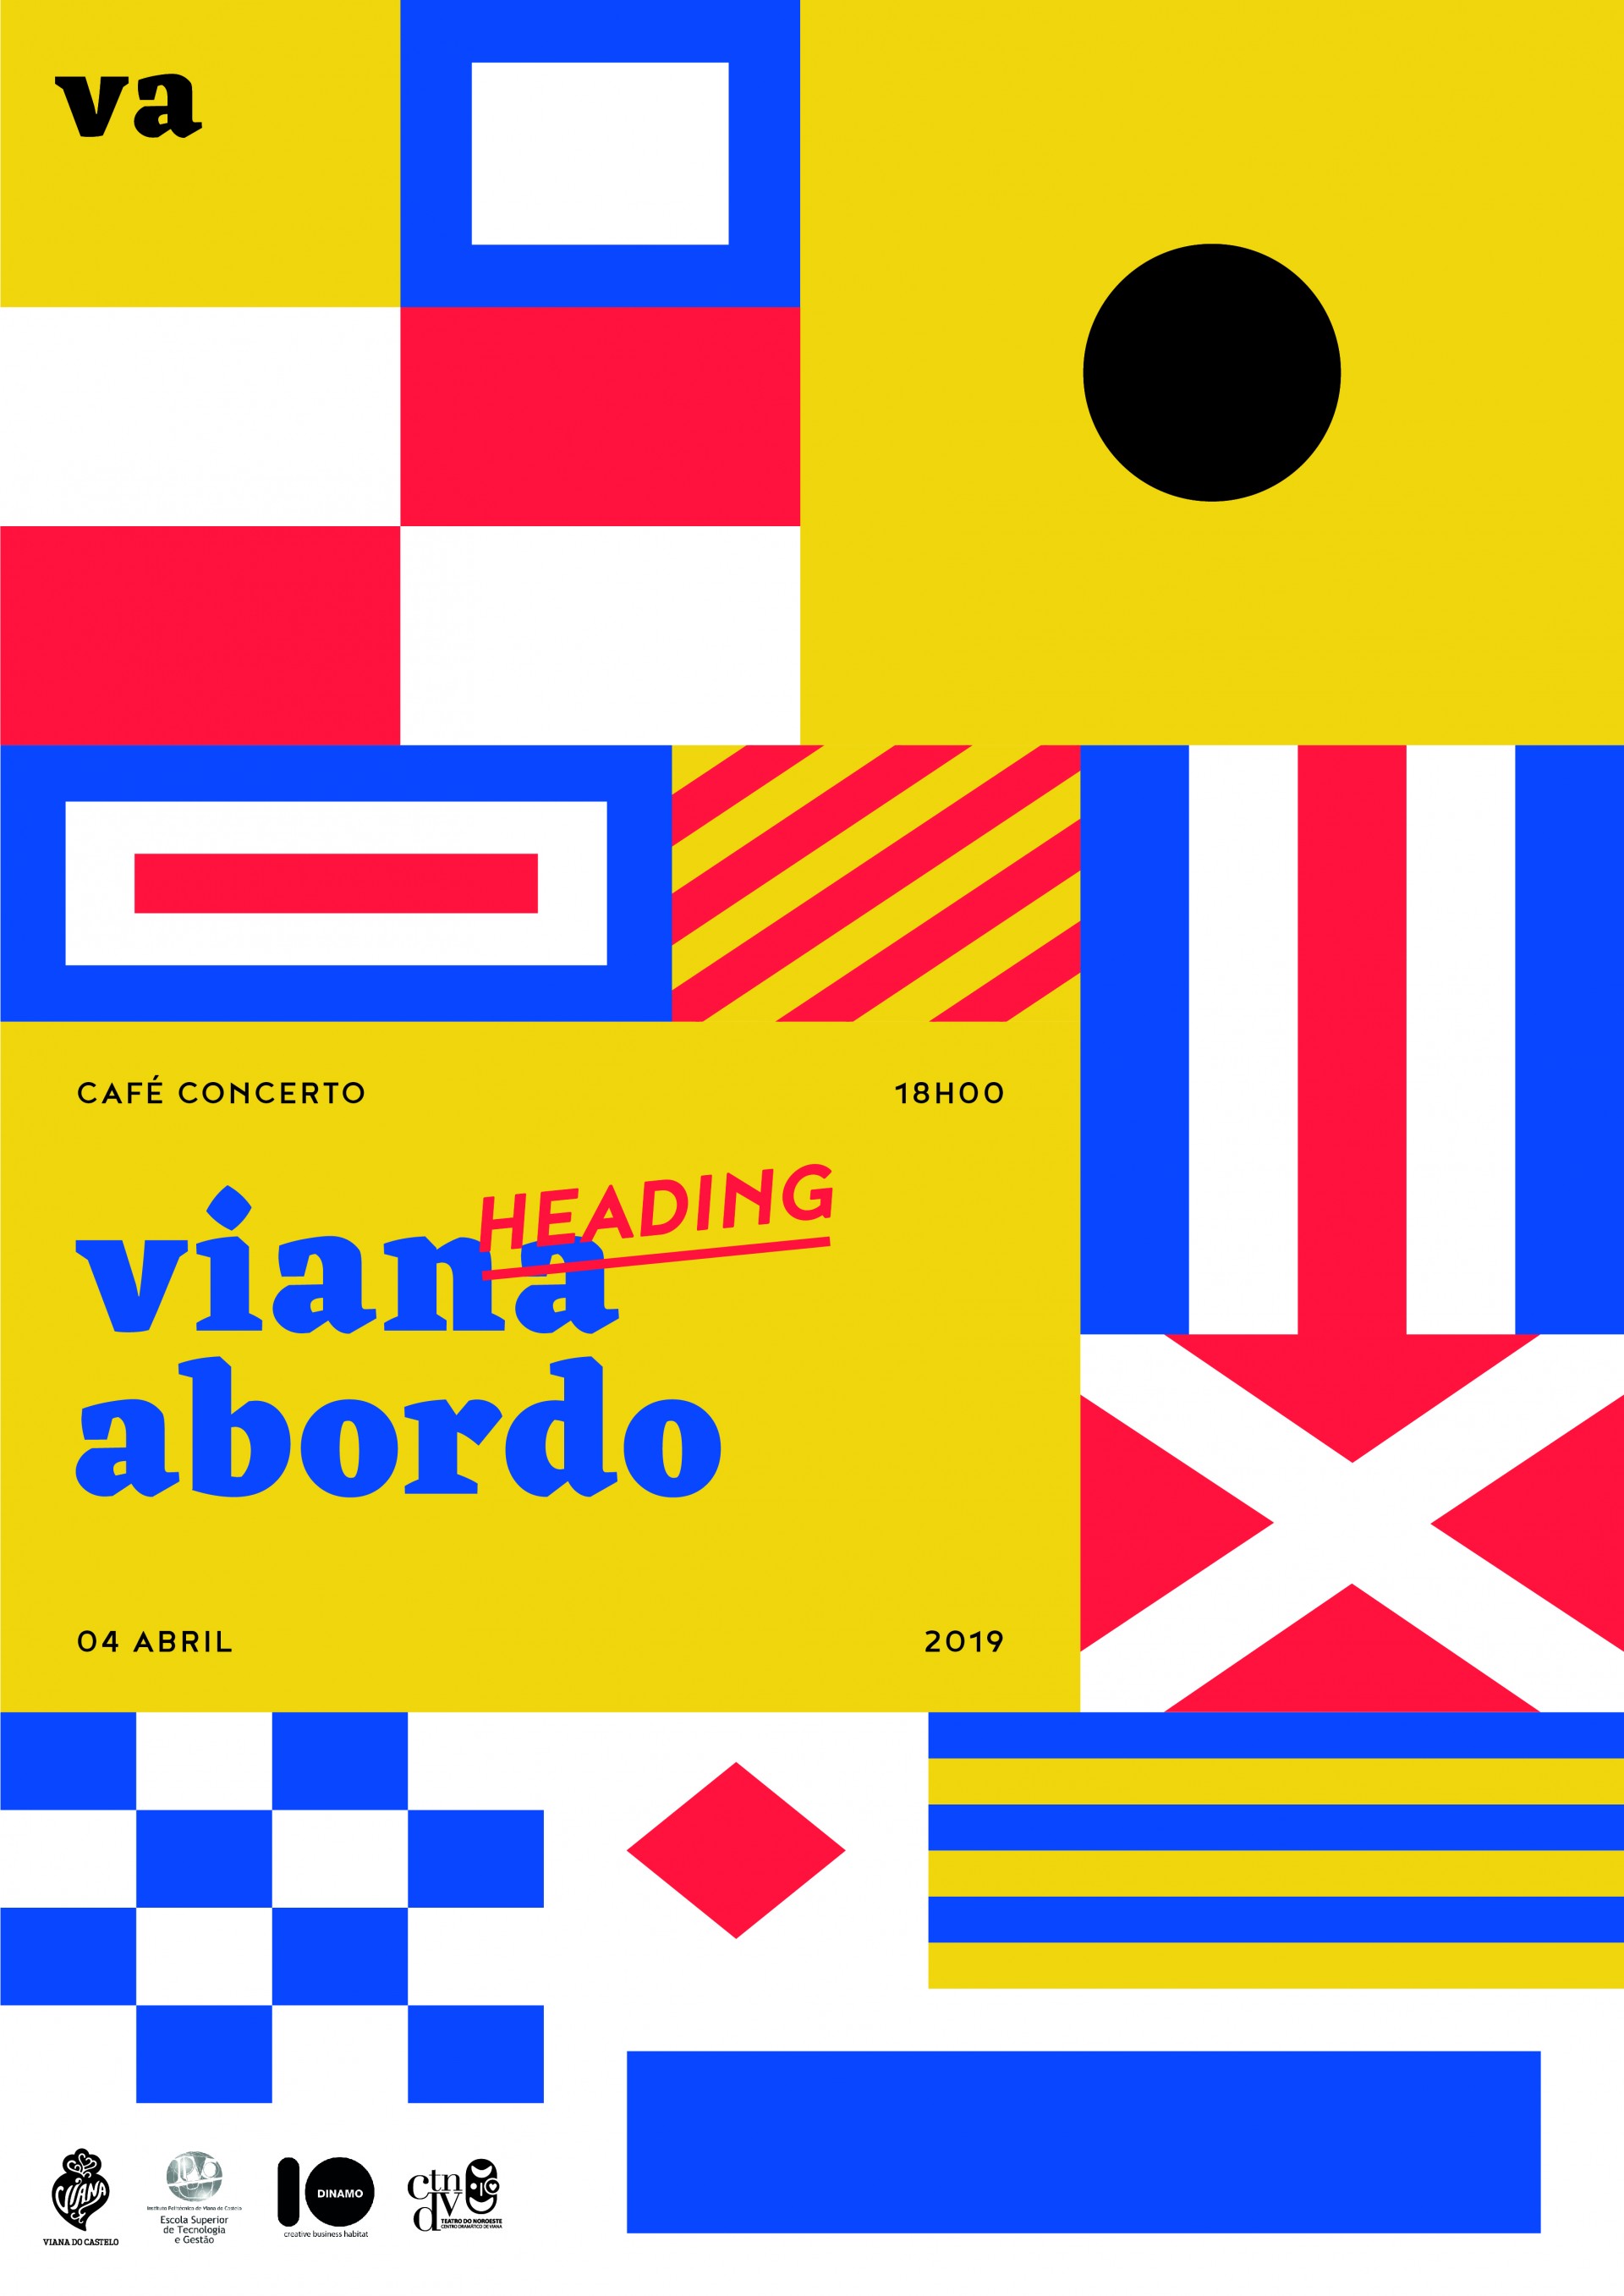 Viana Abordo - Heading